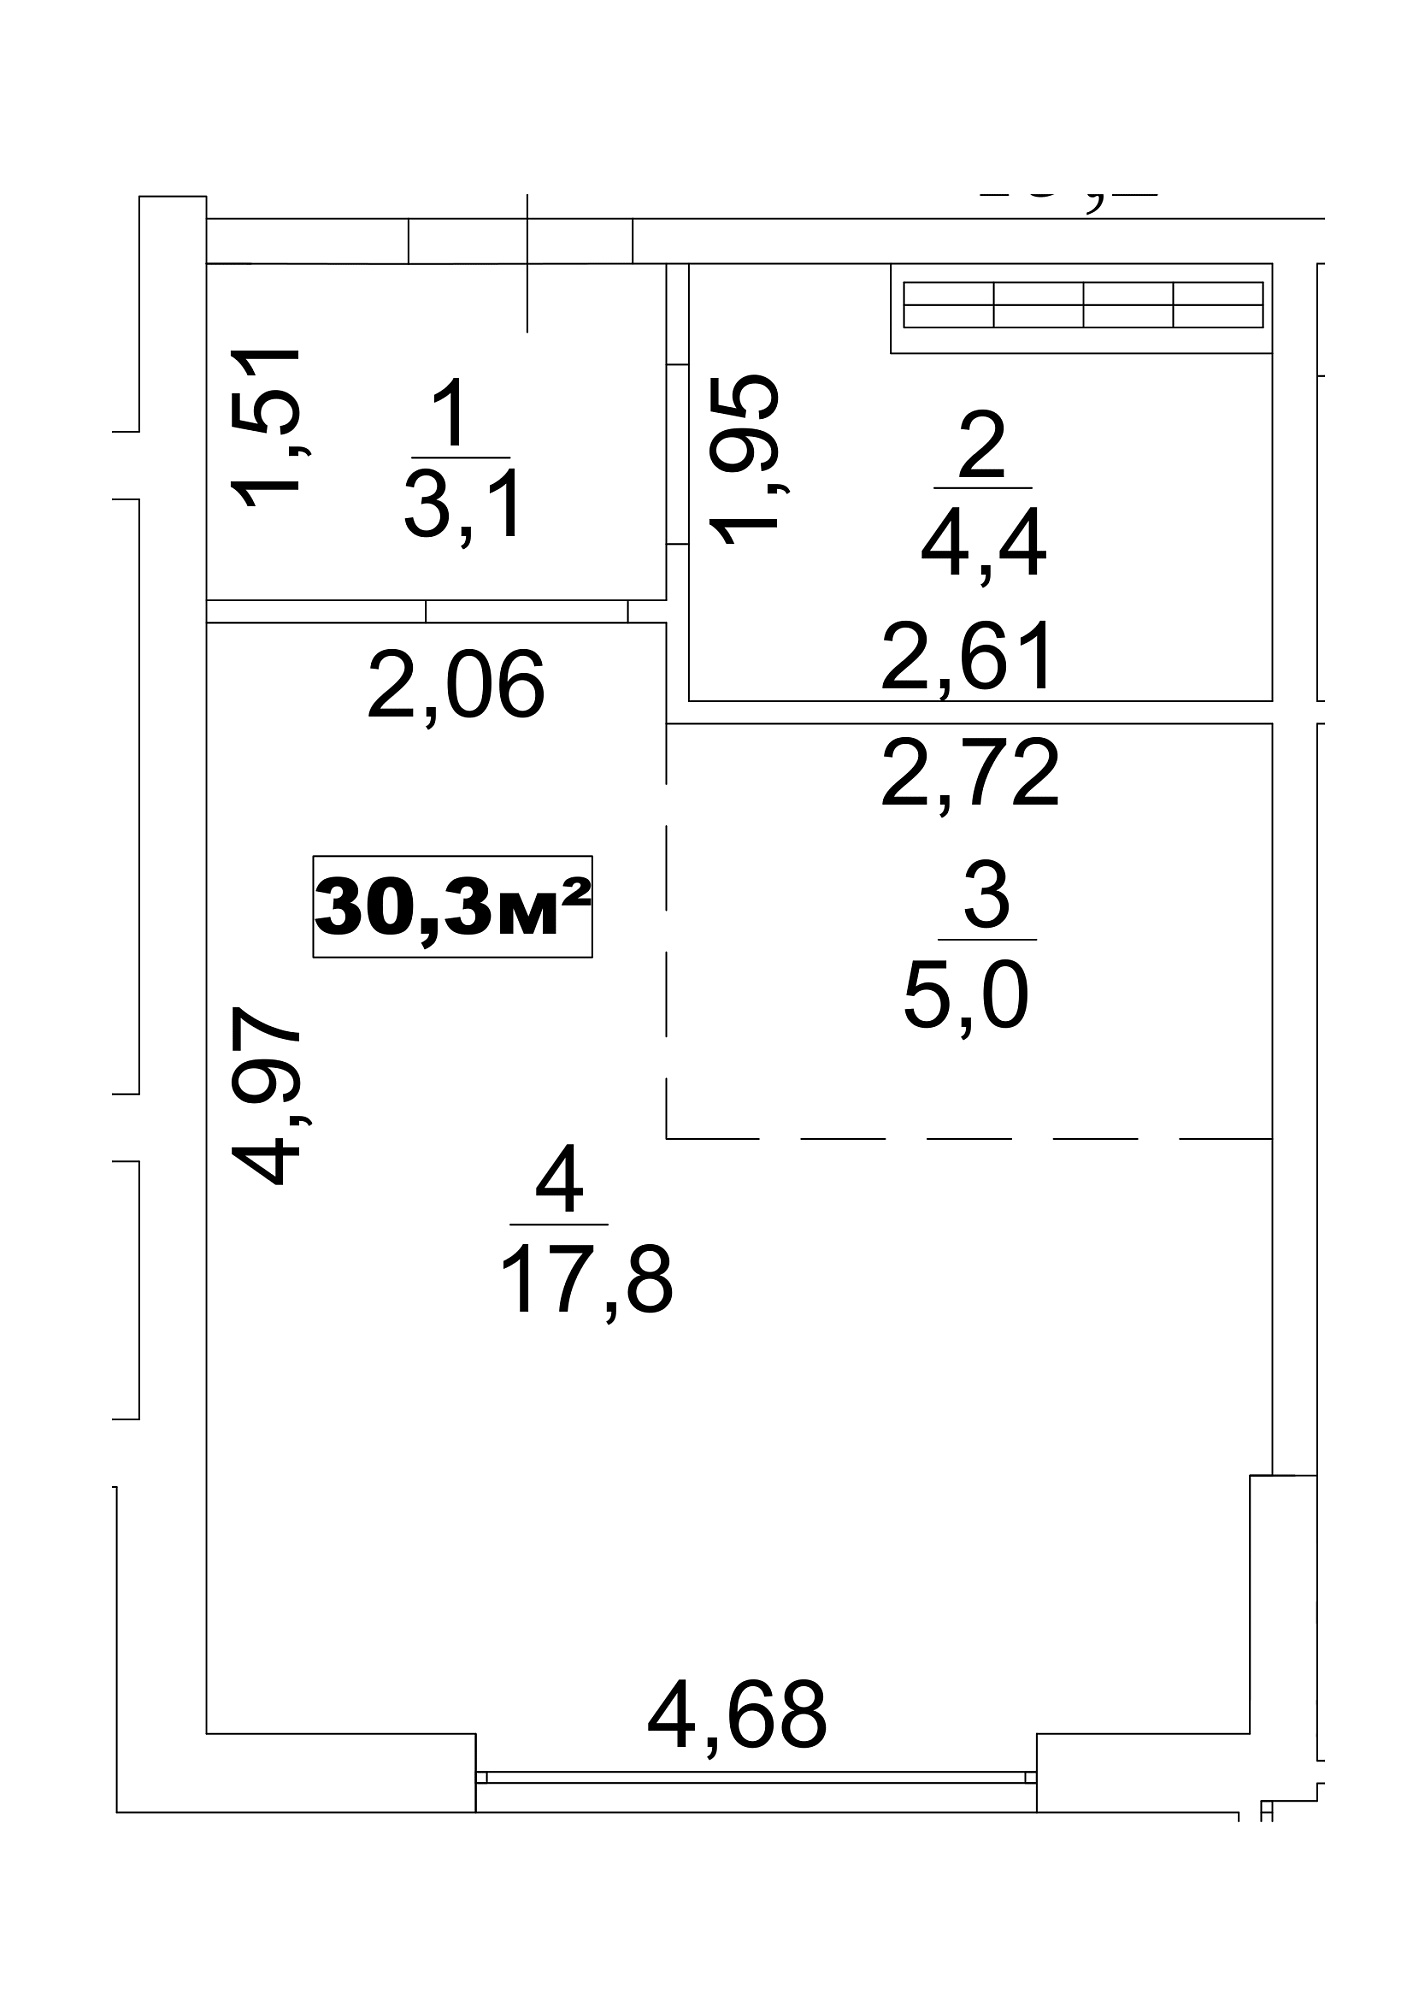 Планування Smart-квартира площею 30.3м2, AB-13-06/00051.